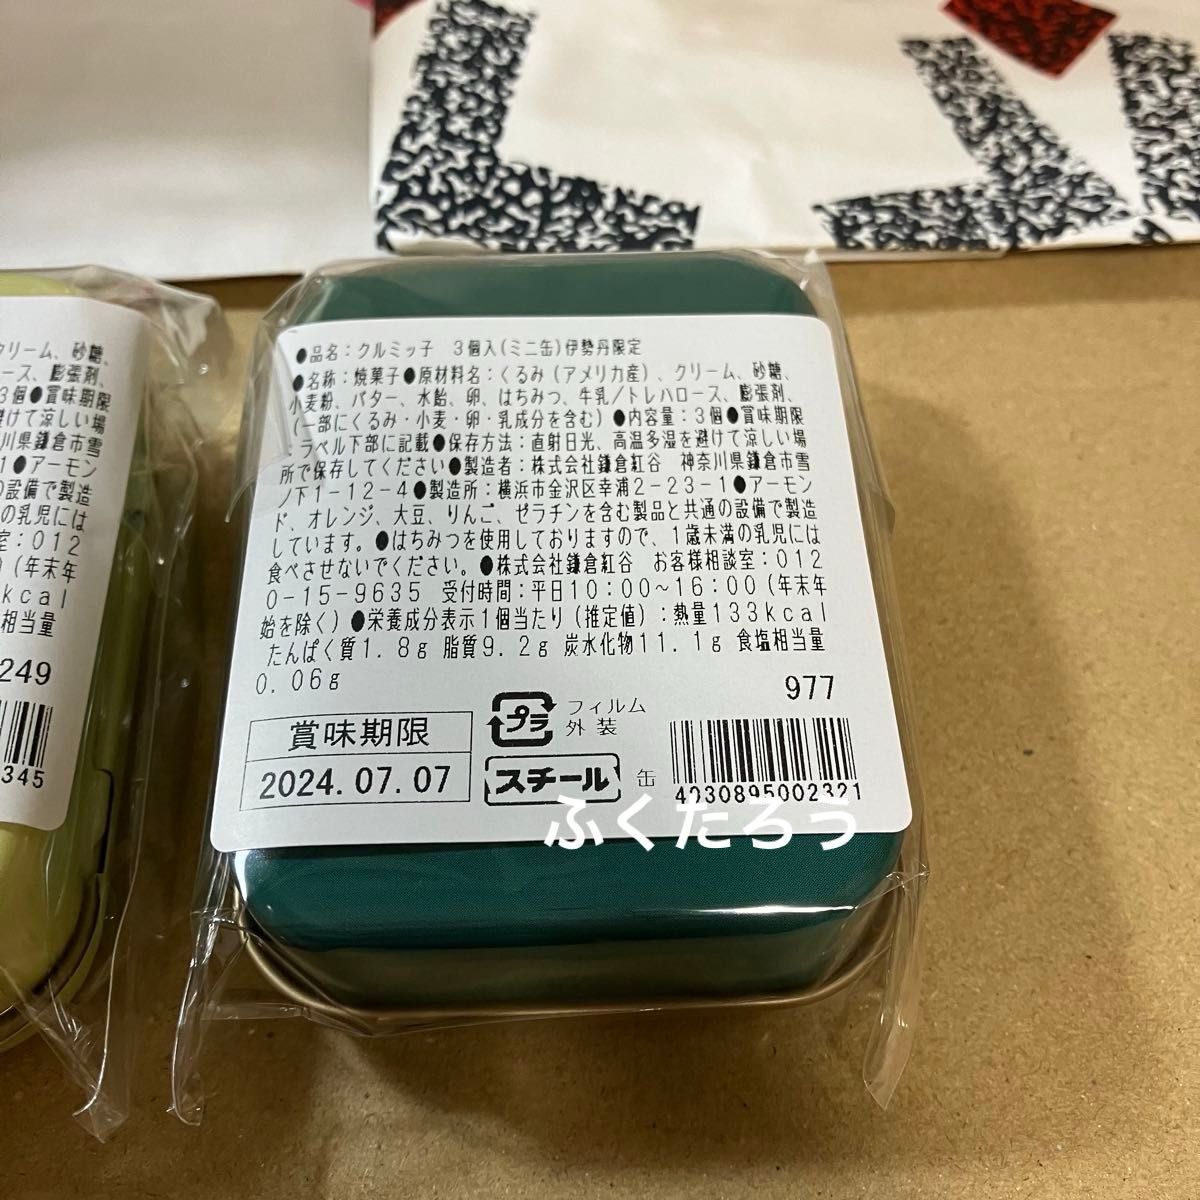 鎌倉紅谷 クルミッ子 百貨店 限定 ミニ缶 5種類 コンプリートセット 新品未開封